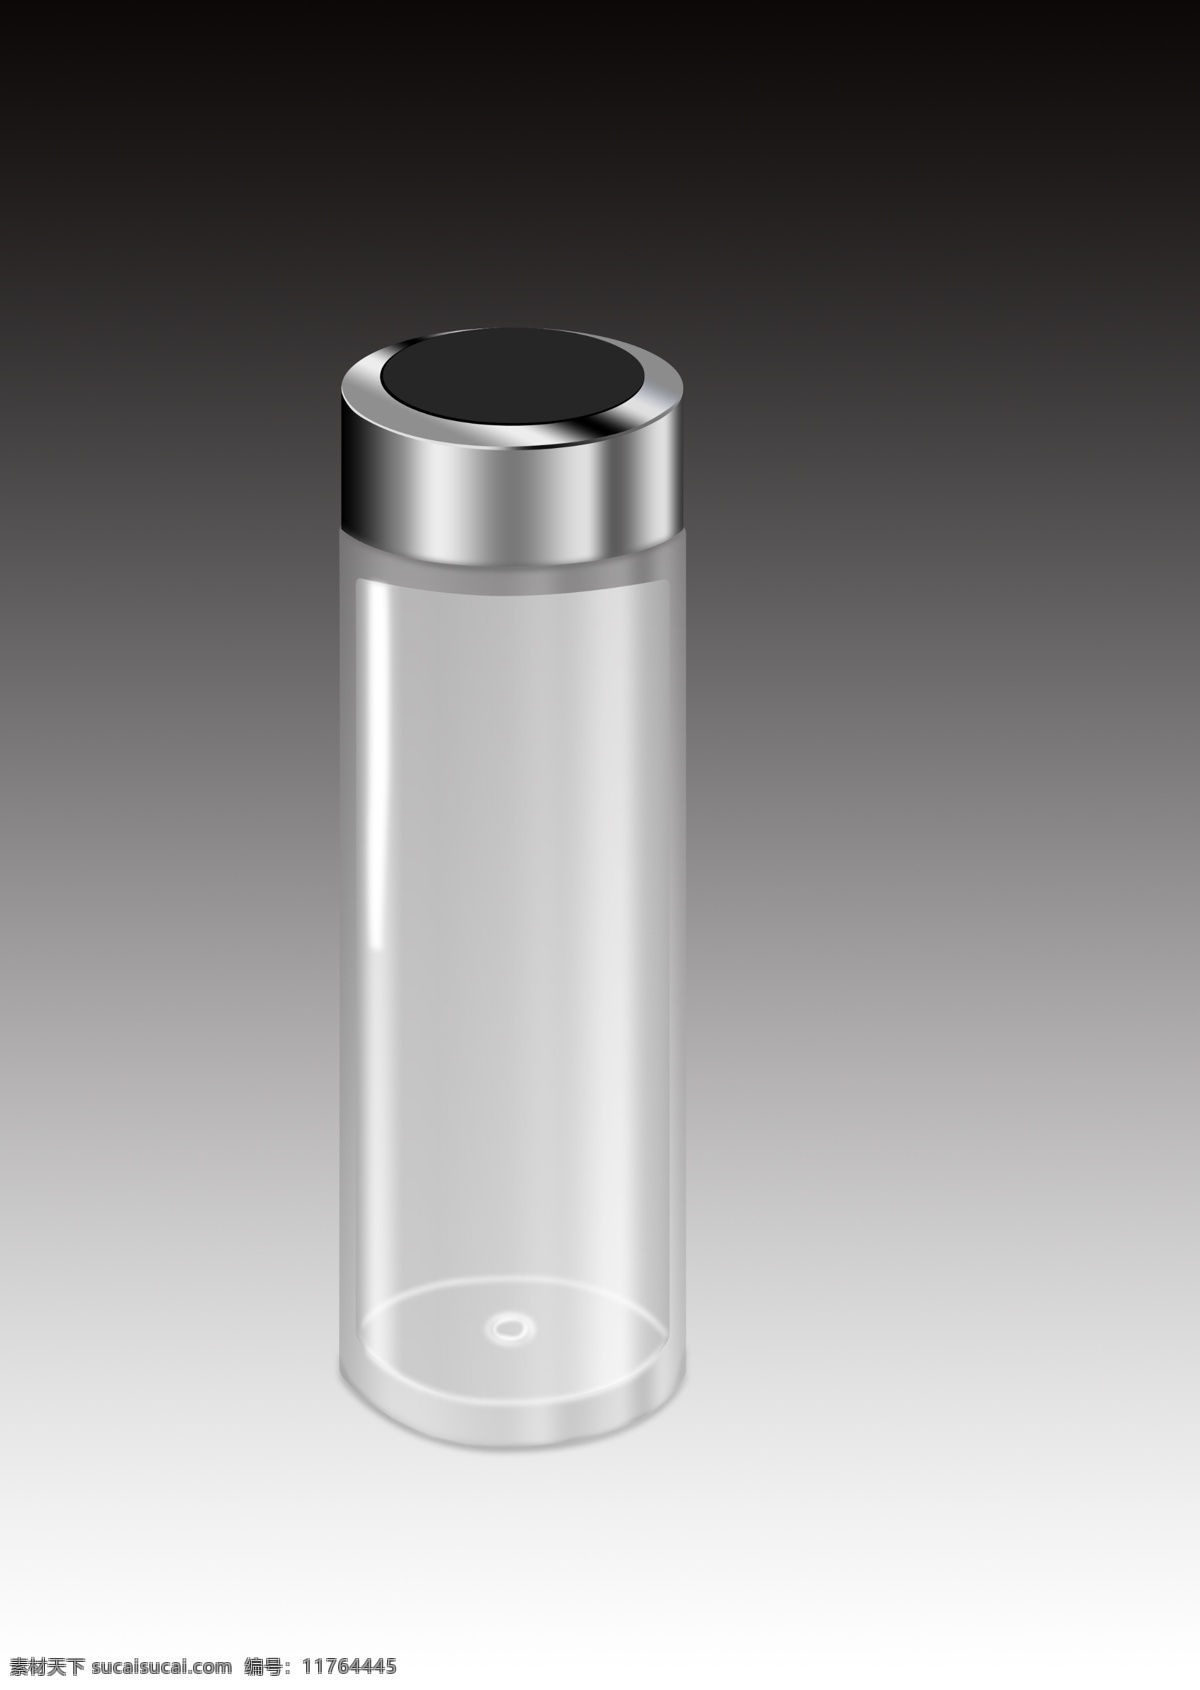 透明 玻璃 质感 金属盖子 水杯 灰色